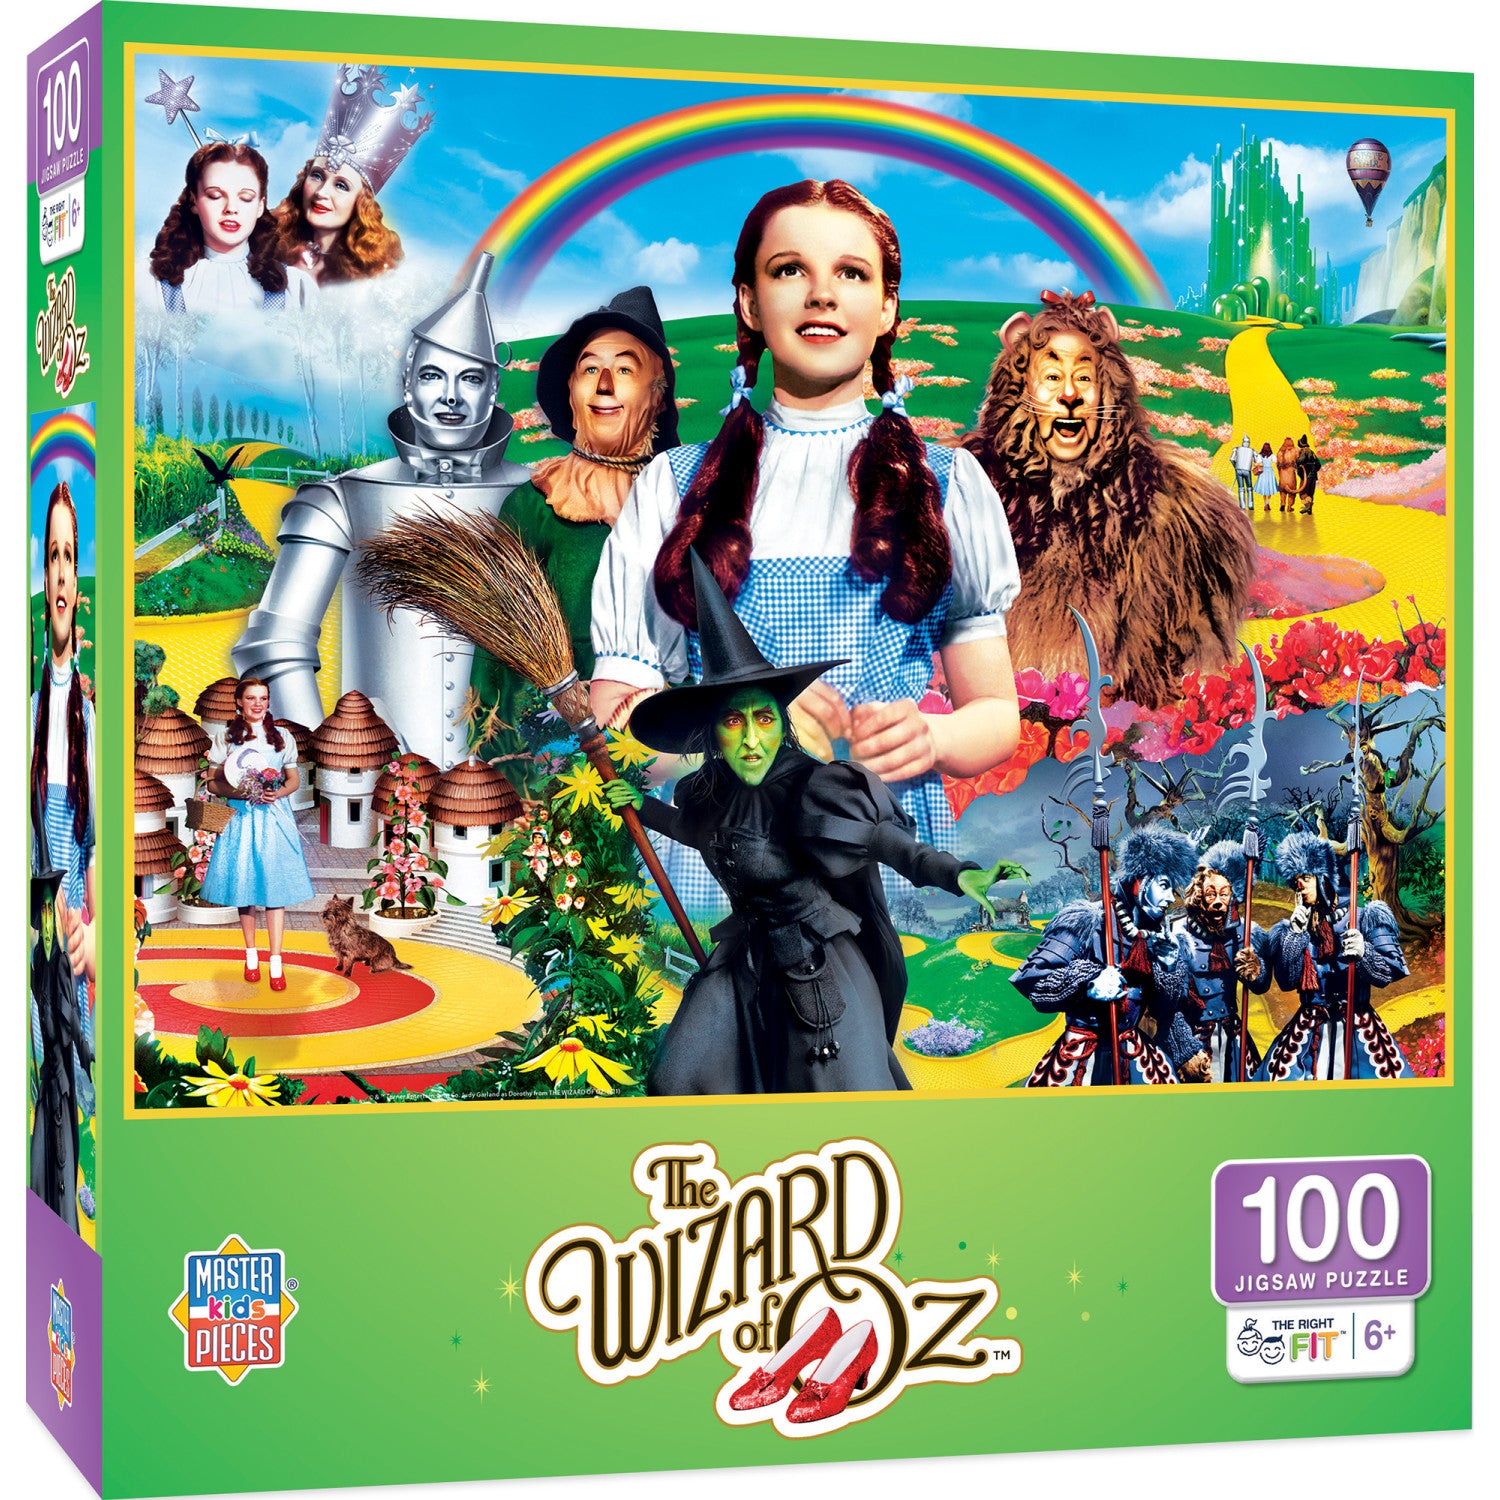 Wonderful Wizard of Oz - 100 Piece Jigsaw Puzzle